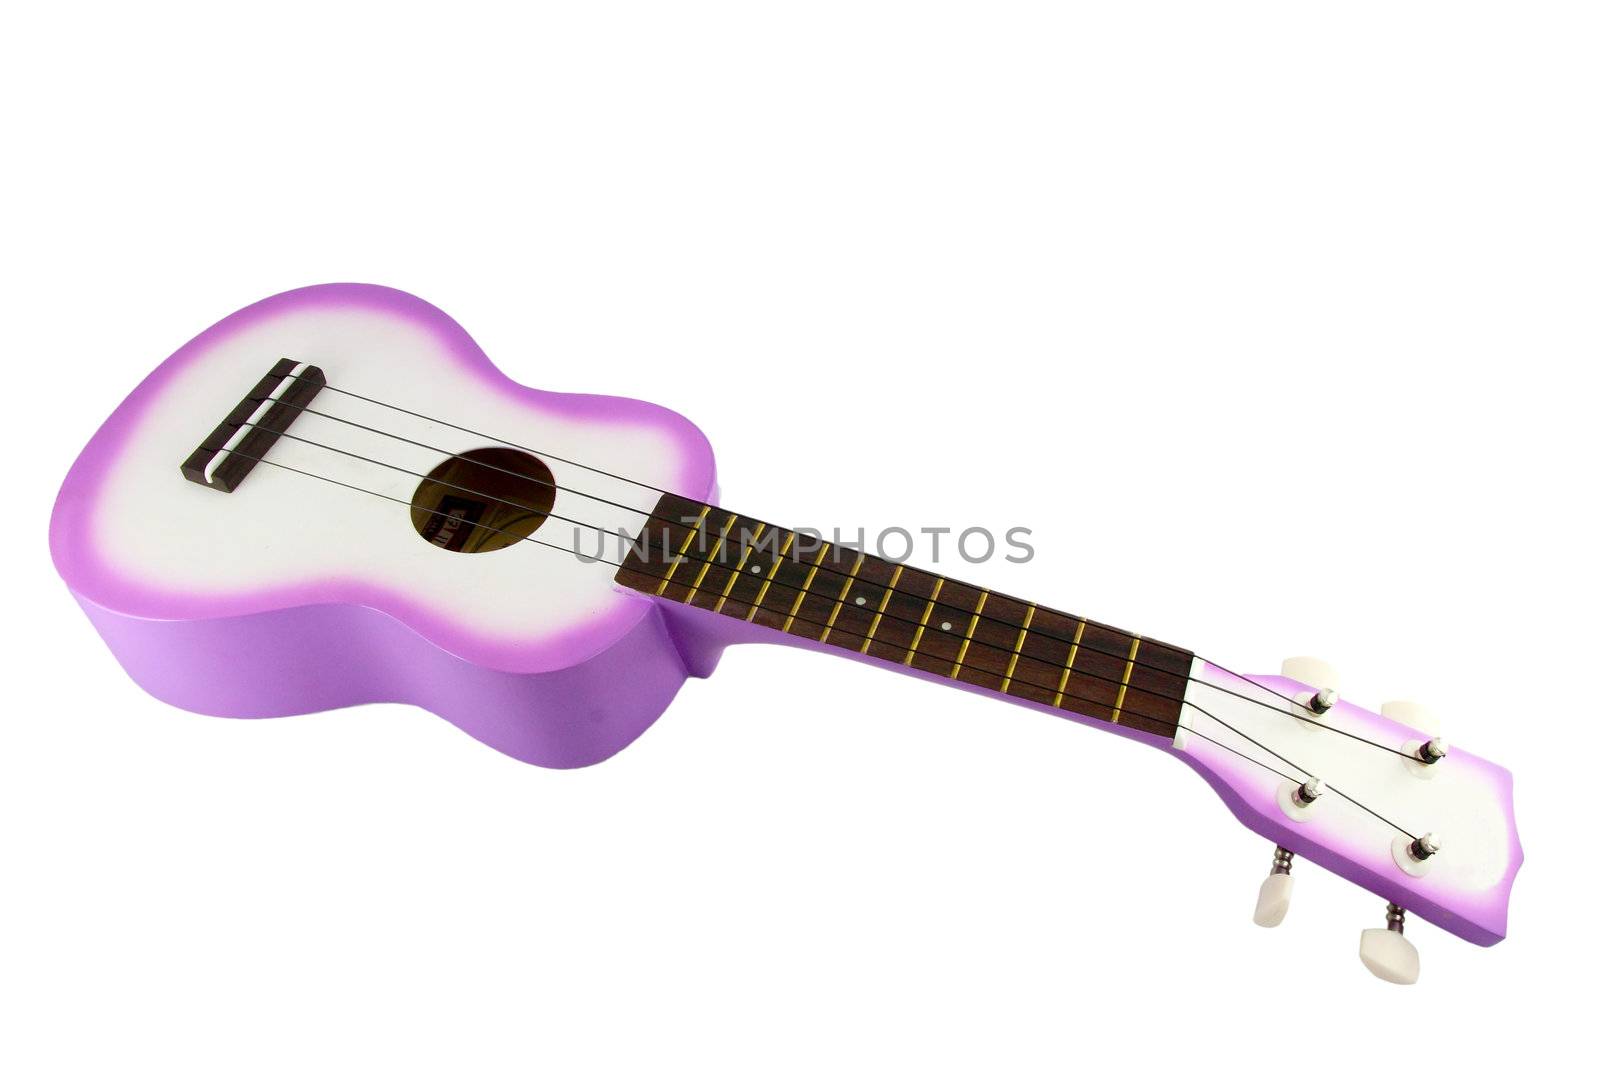 Ukulele guitar on white background by geargodz